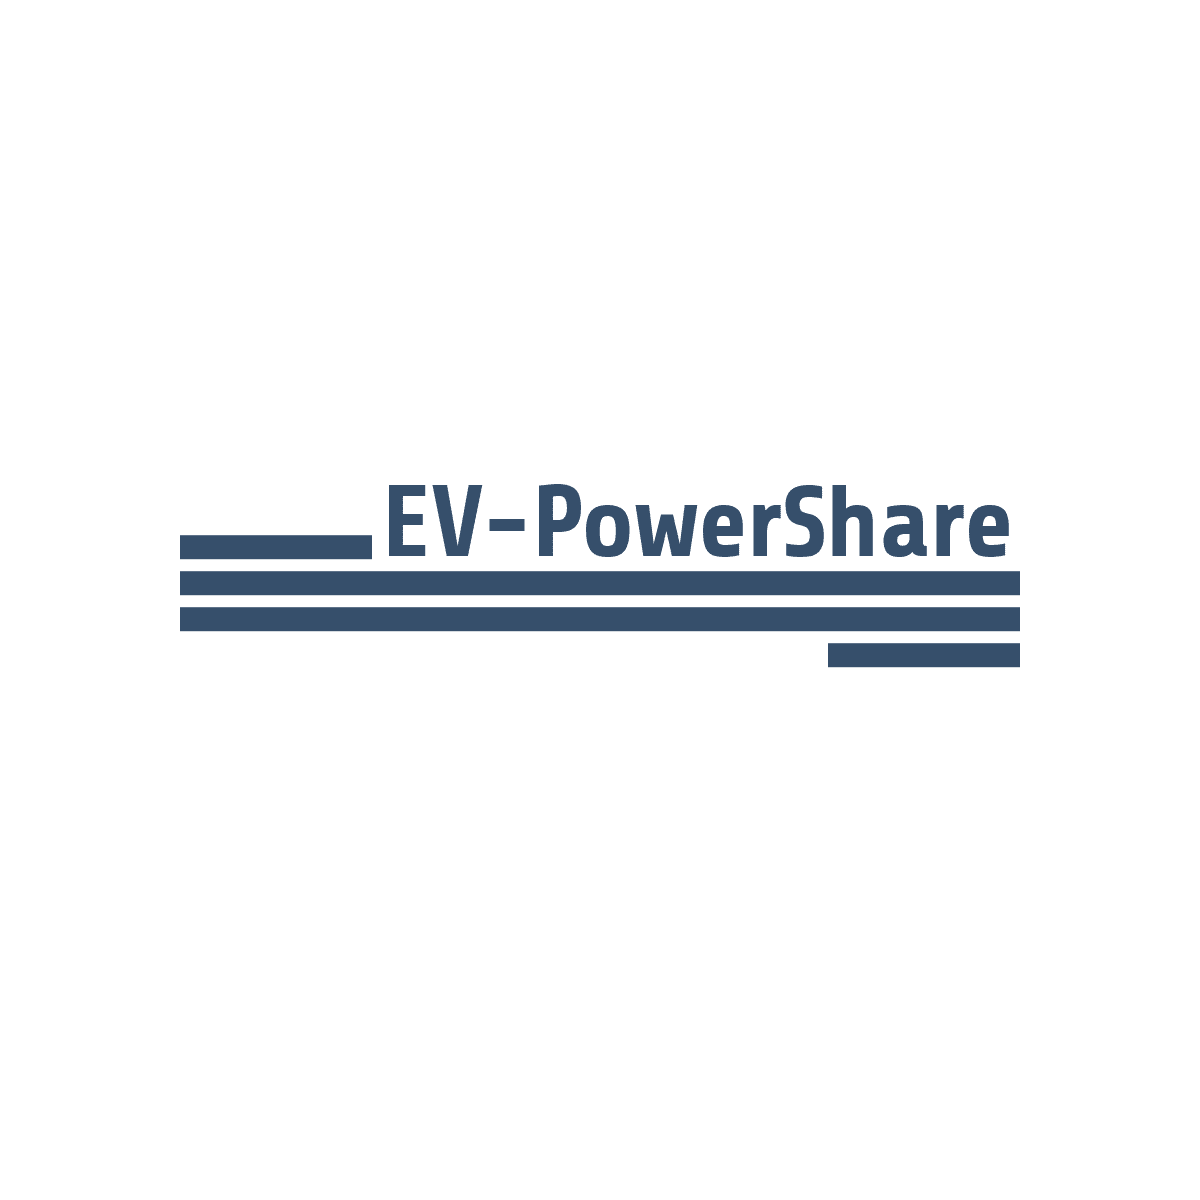 www.ev-powershare.com